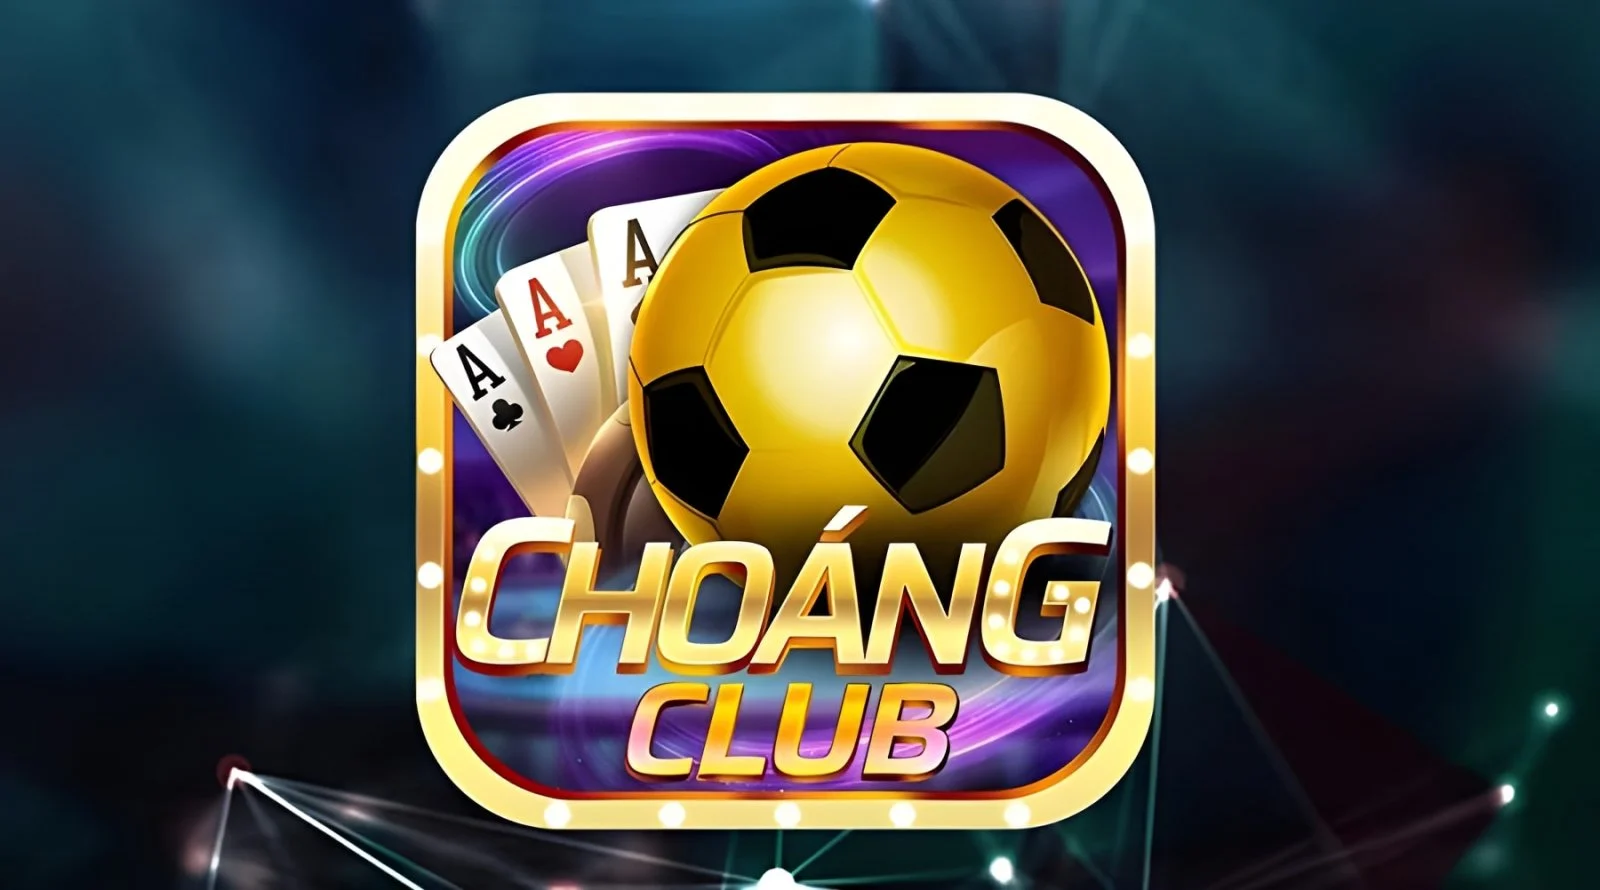 Choang club tạo nên tiếng vang lớn trong lĩnh vực cá cược